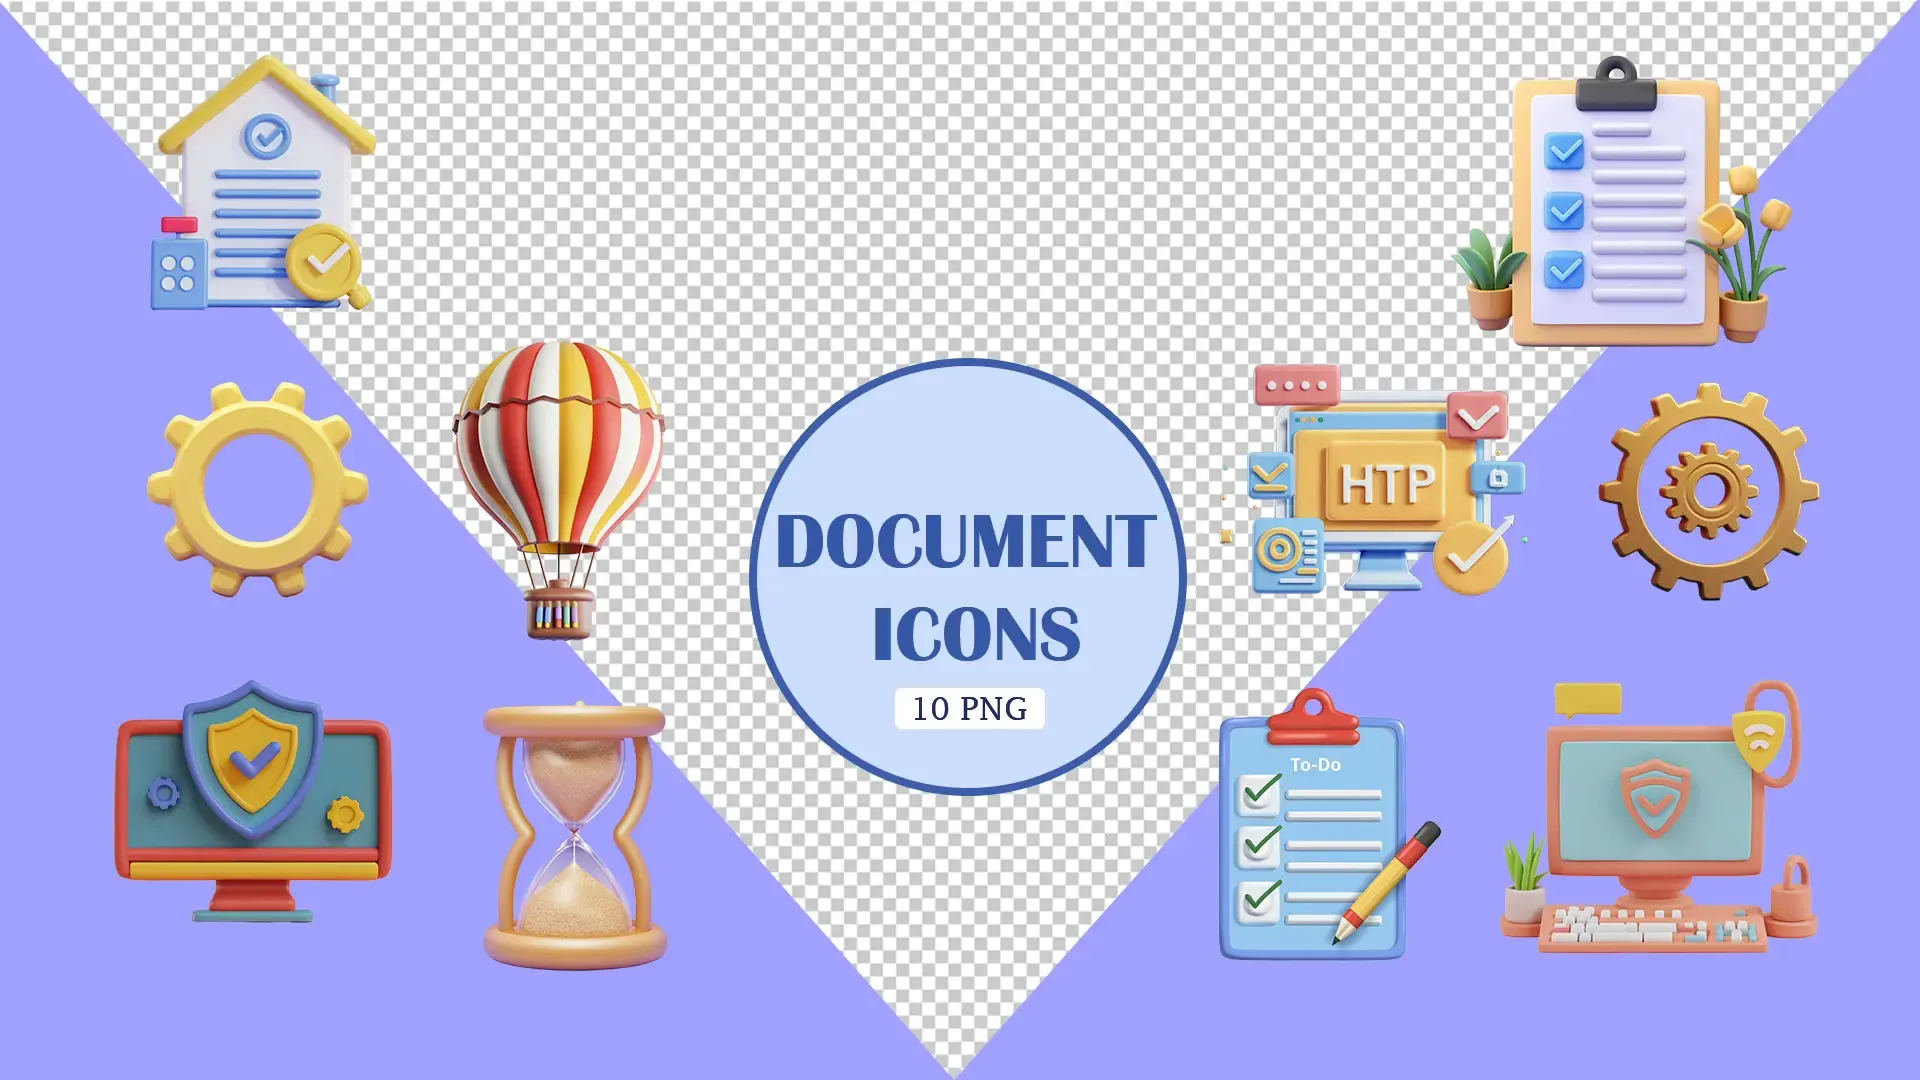 Essential Document Icons 3D Elements Set